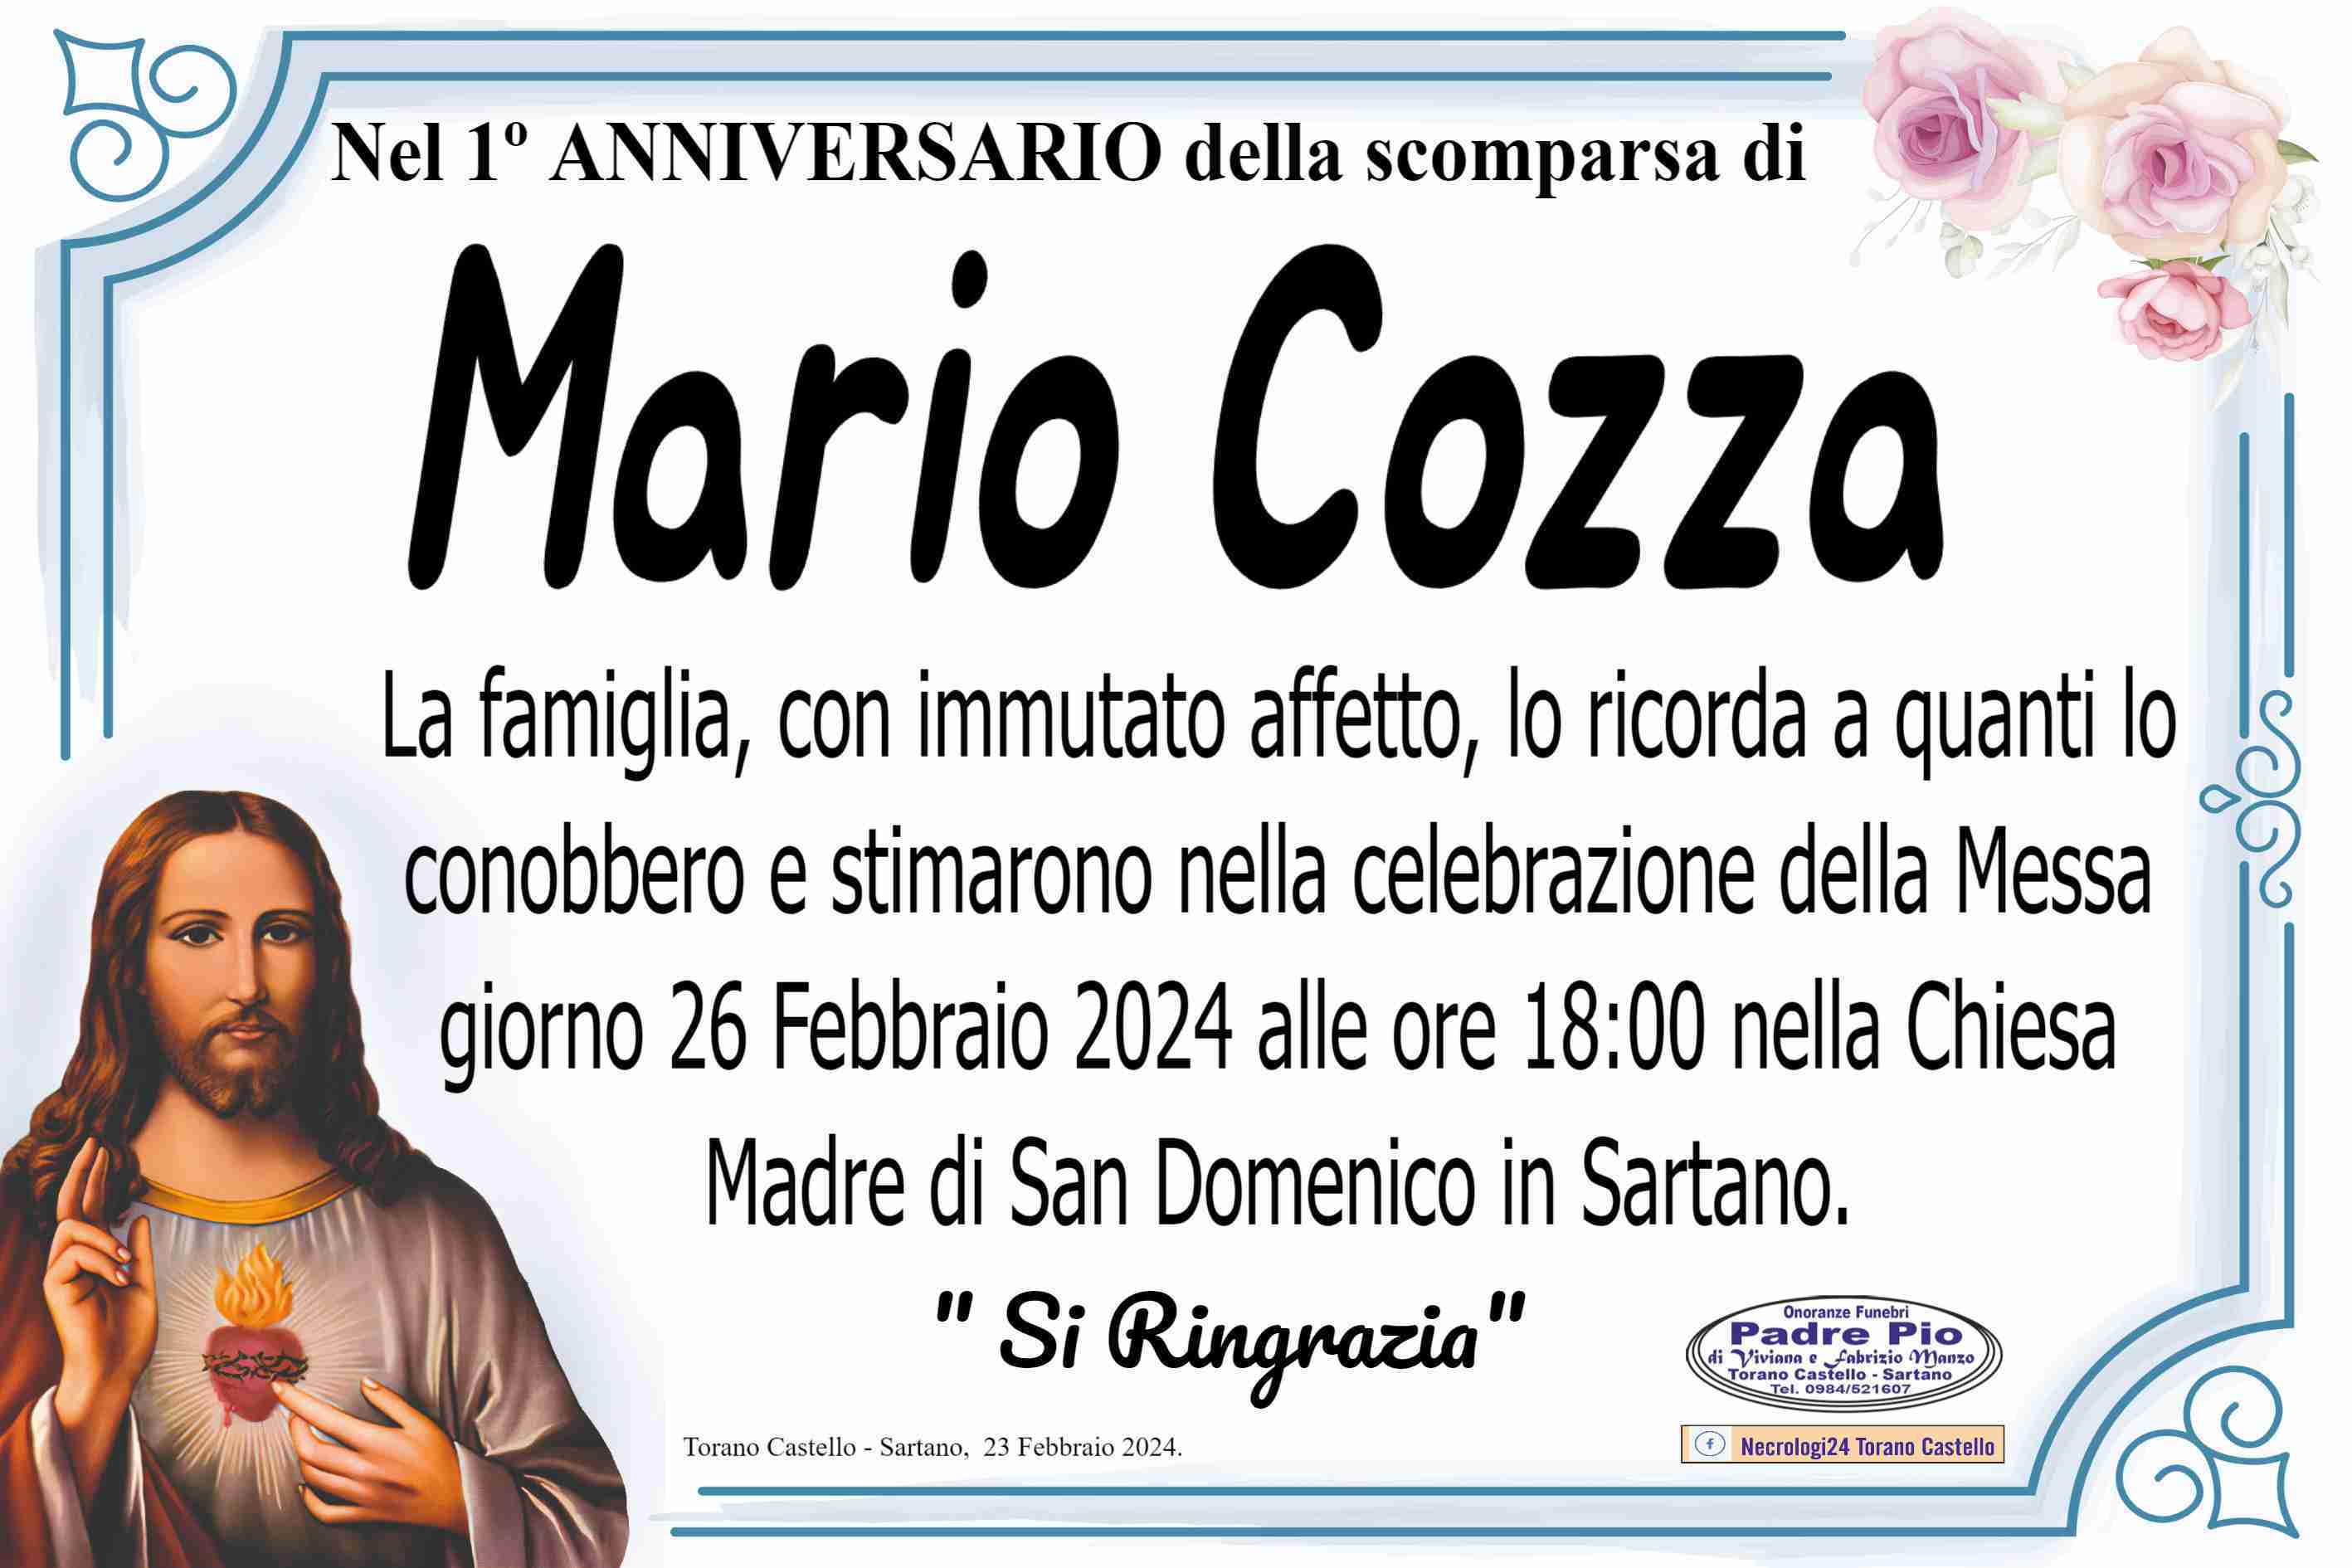 Mario Cozza